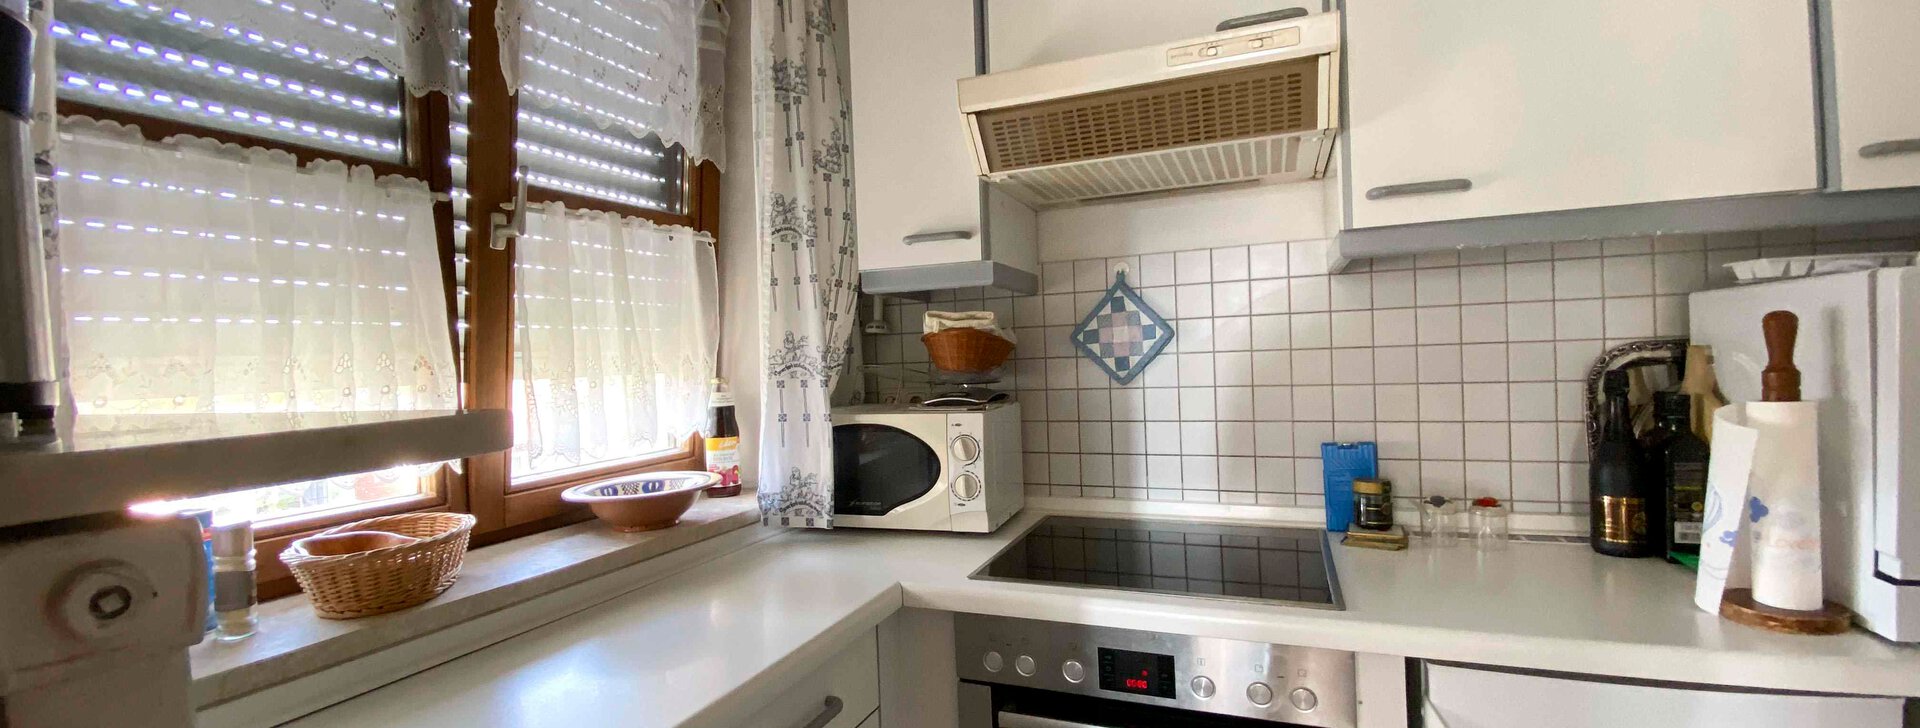 Küche, 2-Zimmer-Wohnung in Freilassing, Immobilie kaufen, Freilassing | © HausBauHaus GmbH